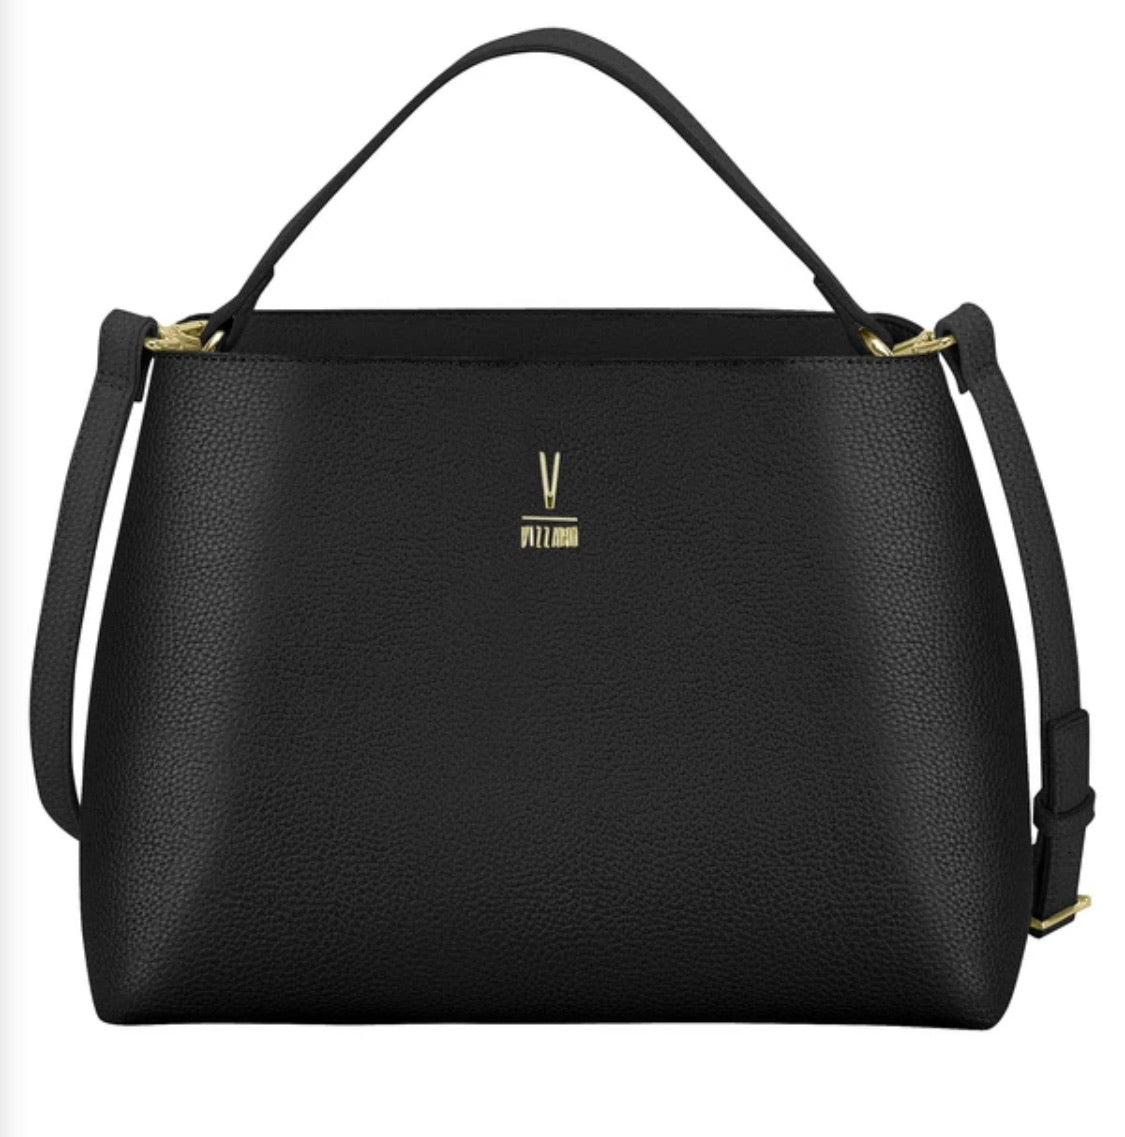 Vizzano Handbag Black 1805708210008.1